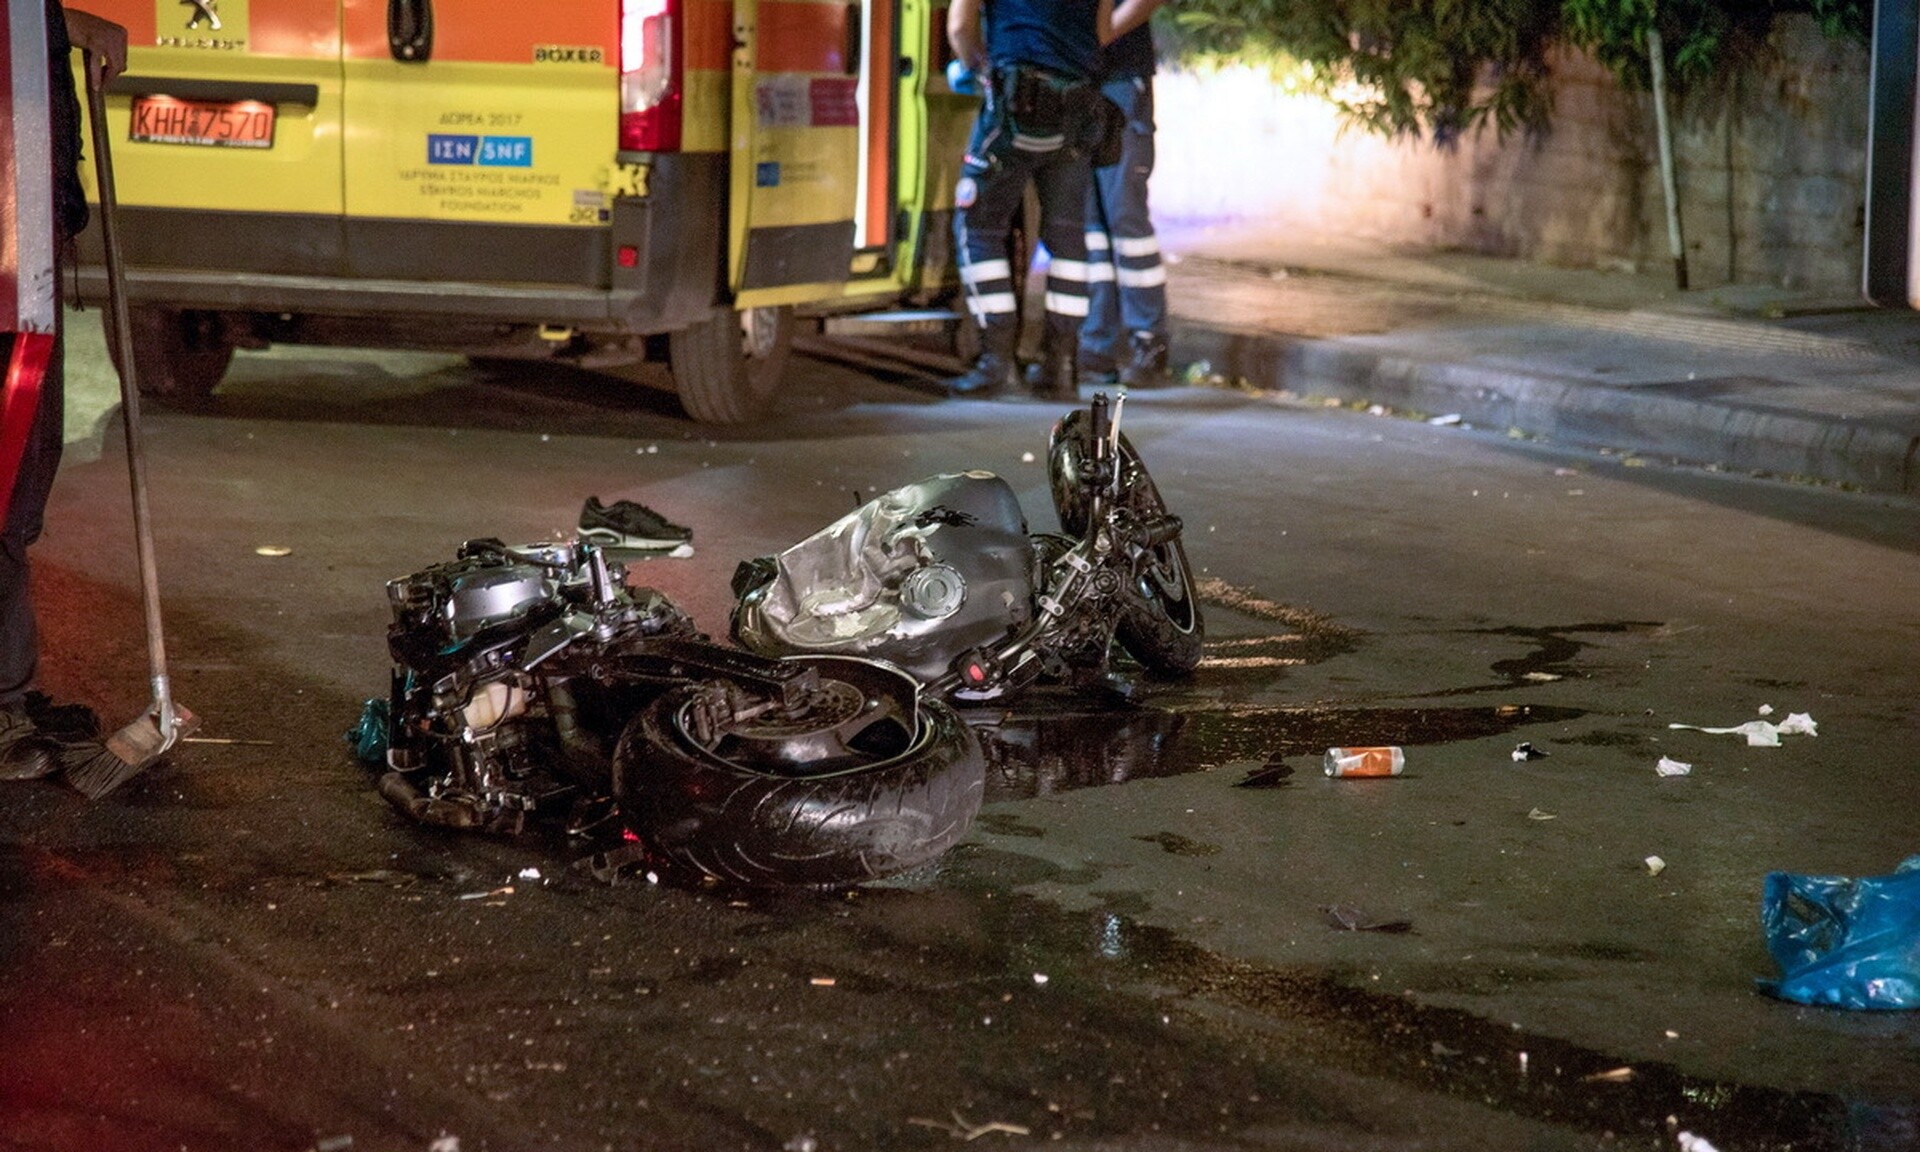 Τροχαίο στη Λεωφόρο Ποσειδώνος: Εκτροπή φορτηγού – Τραυματίστηκε διερχόμενος μοτοσικλετιστής